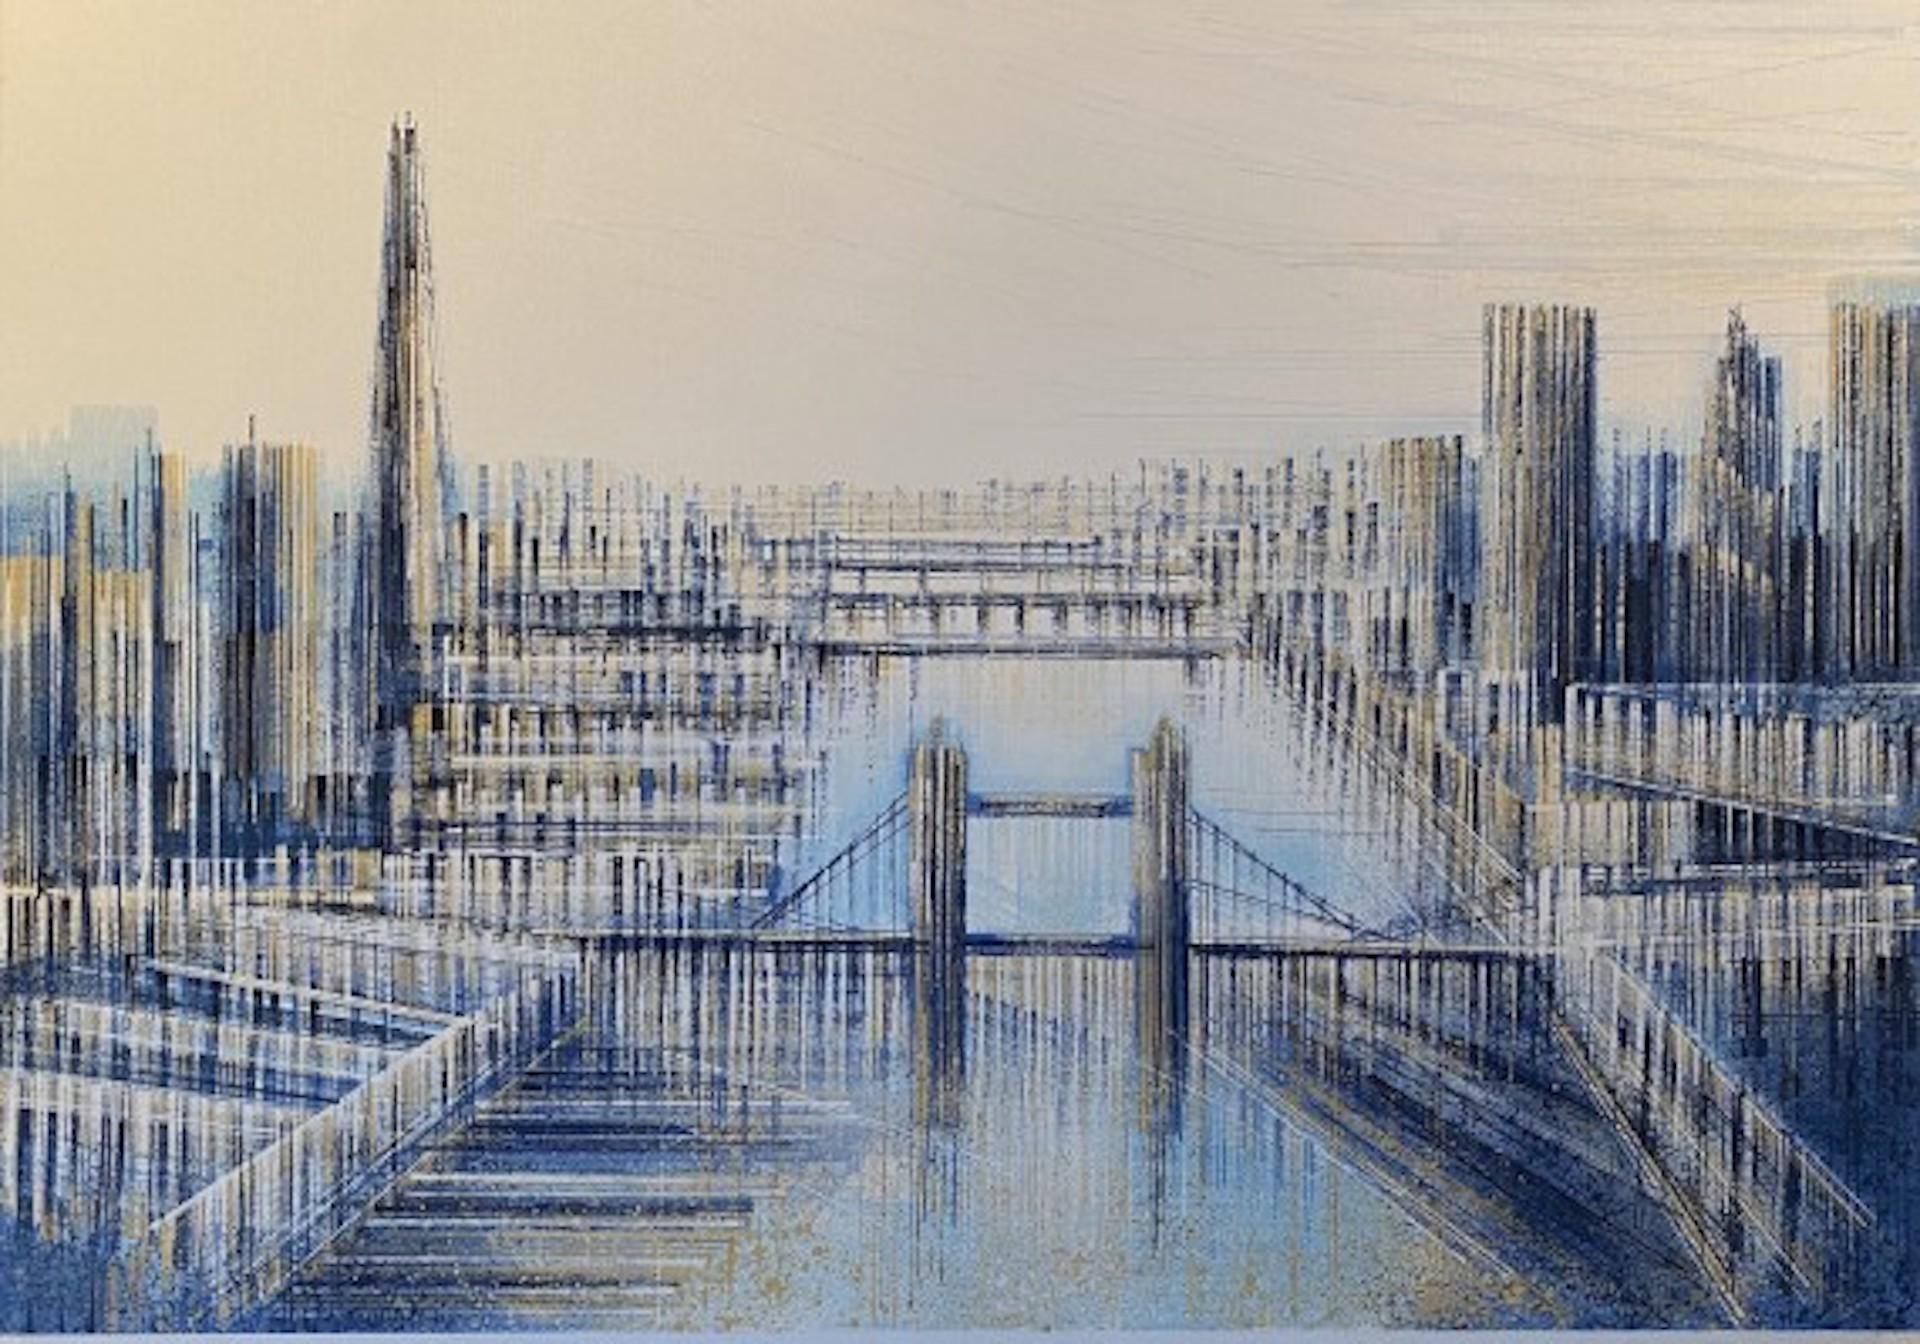 Shard und Tower Bridge [2020]
Original
Architektur
Acryl auf Leinwand
Größe: H:70 cm x B:100 cm x T:4cm
Ungerahmt verkauft
Bitte beachten Sie, dass die Insitu-Bilder lediglich einen Hinweis darauf geben, wie ein Stück aussehen könnte.

Shard and